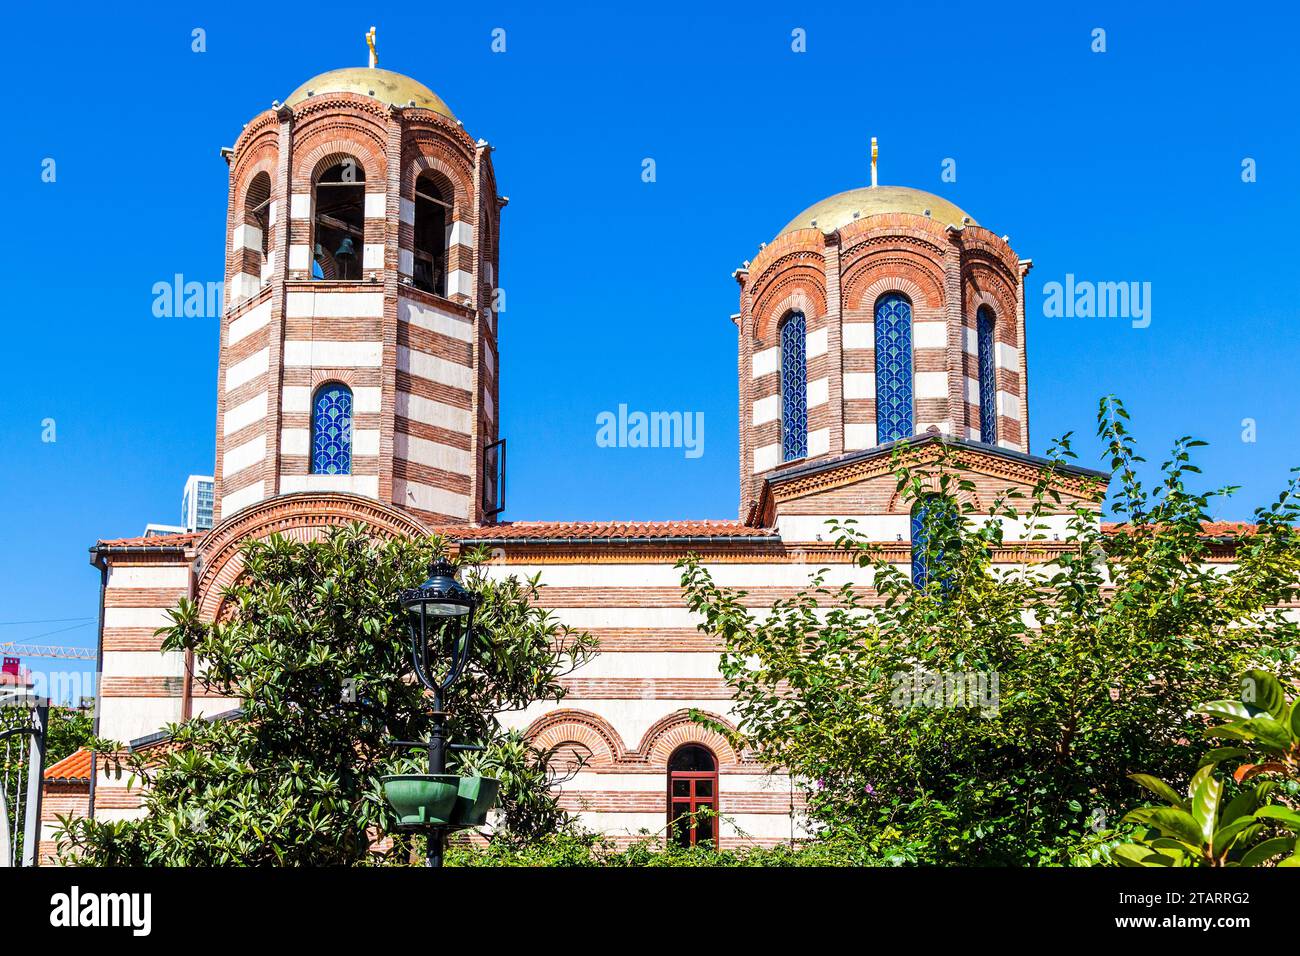 Reisen Sie nach Georgien - Kuppel der griechischen Kirche St. Nikolaus in Batumi an sonnigen Tagen. Diese Kirche ist mehr als 150 Jahre alt und gehört zu den ältesten Stockfoto